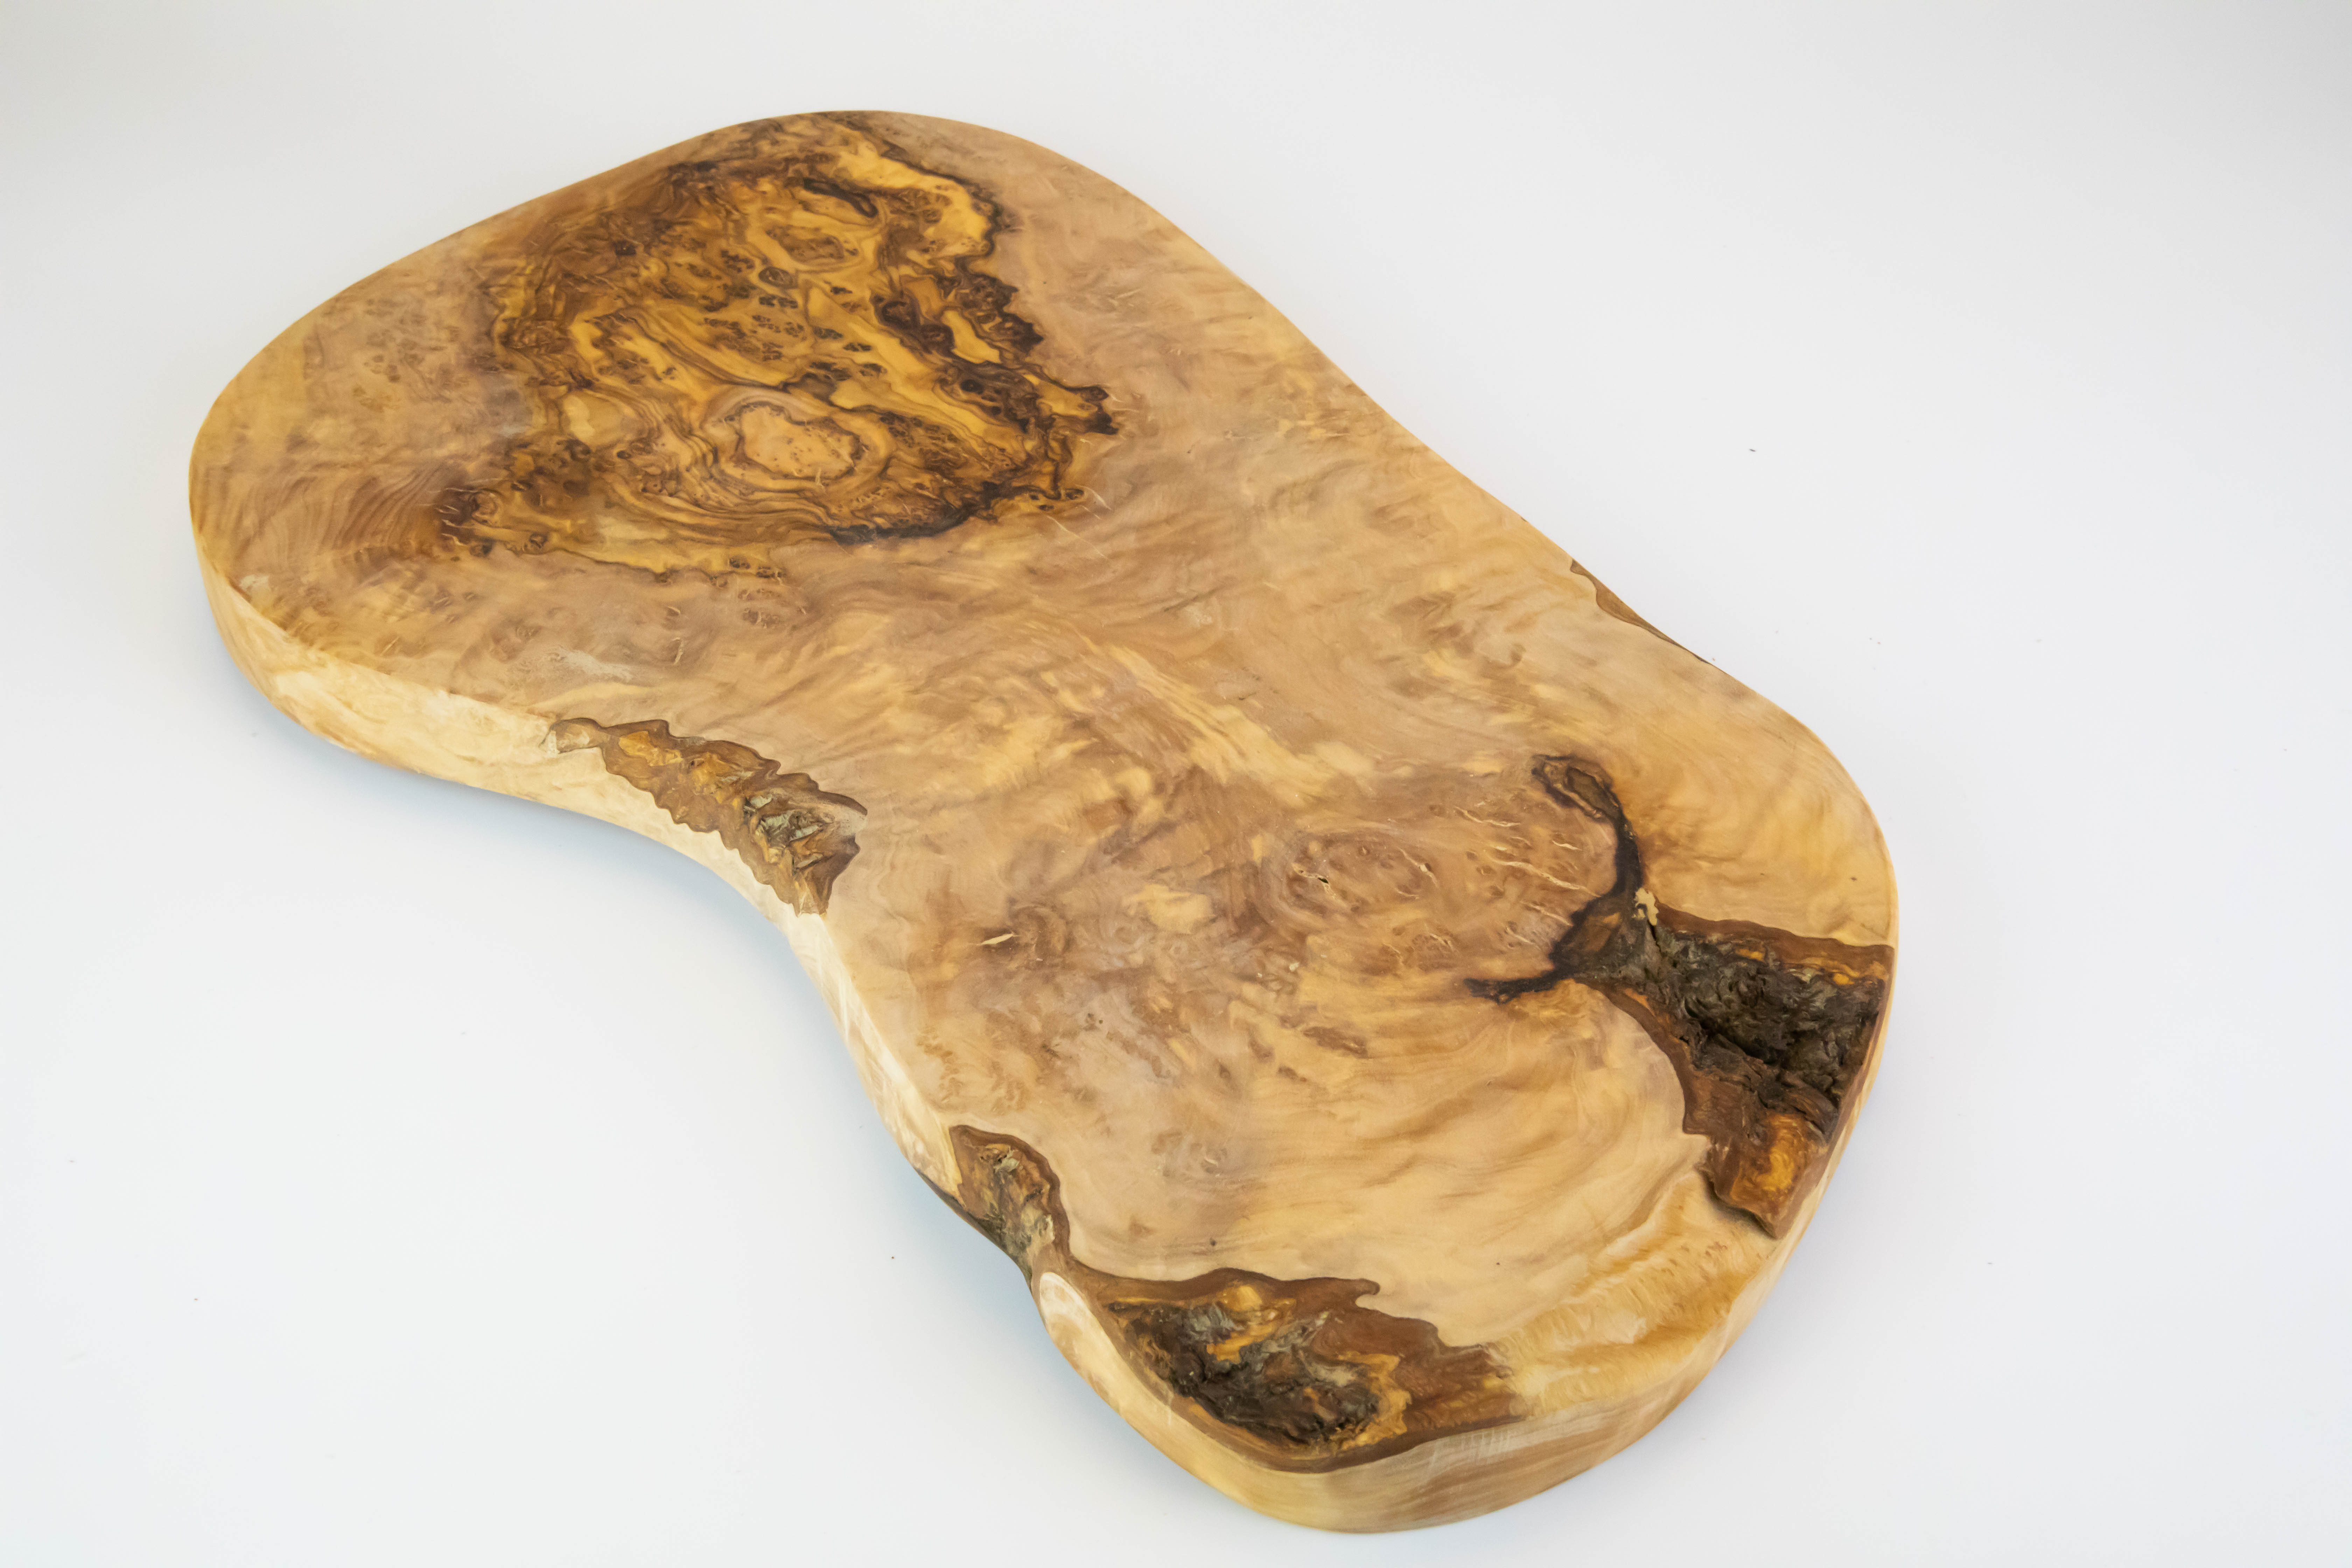 Grande e rustico tagliere in legno d'olivo della lunghezza di 55-60 cm.